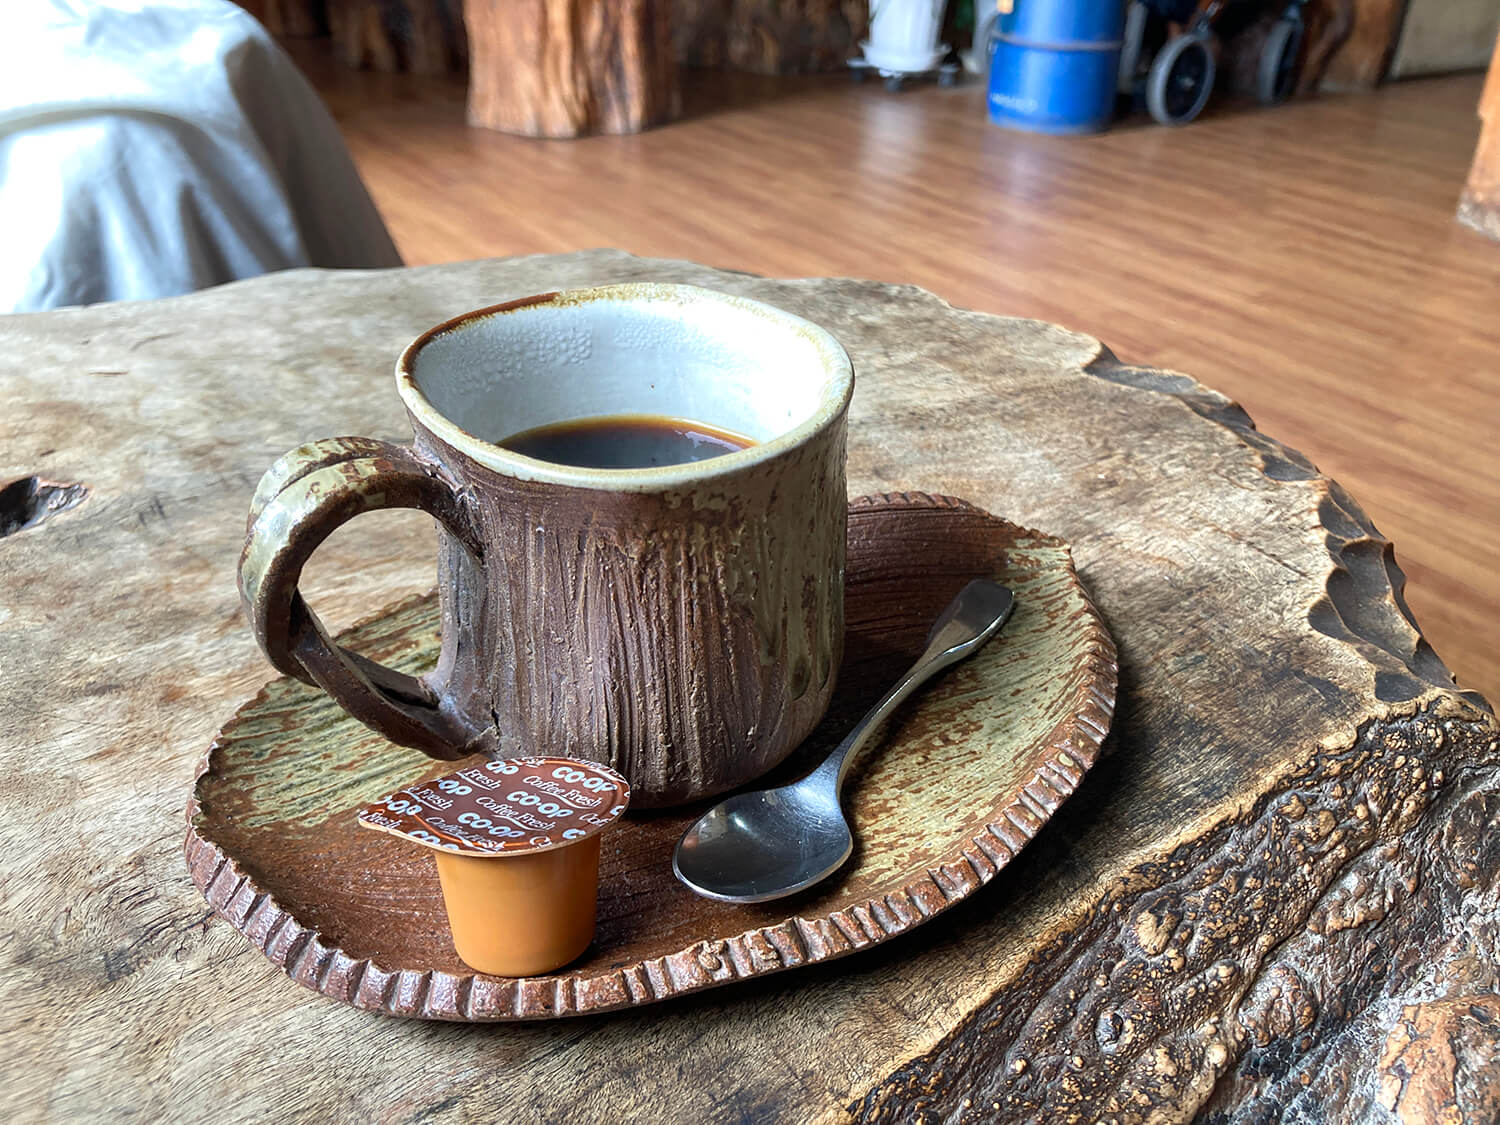 「オリジナルブレンドコーヒー」600円。重厚な一枚板のテーブルに木を模した器がしっくりとなじむ